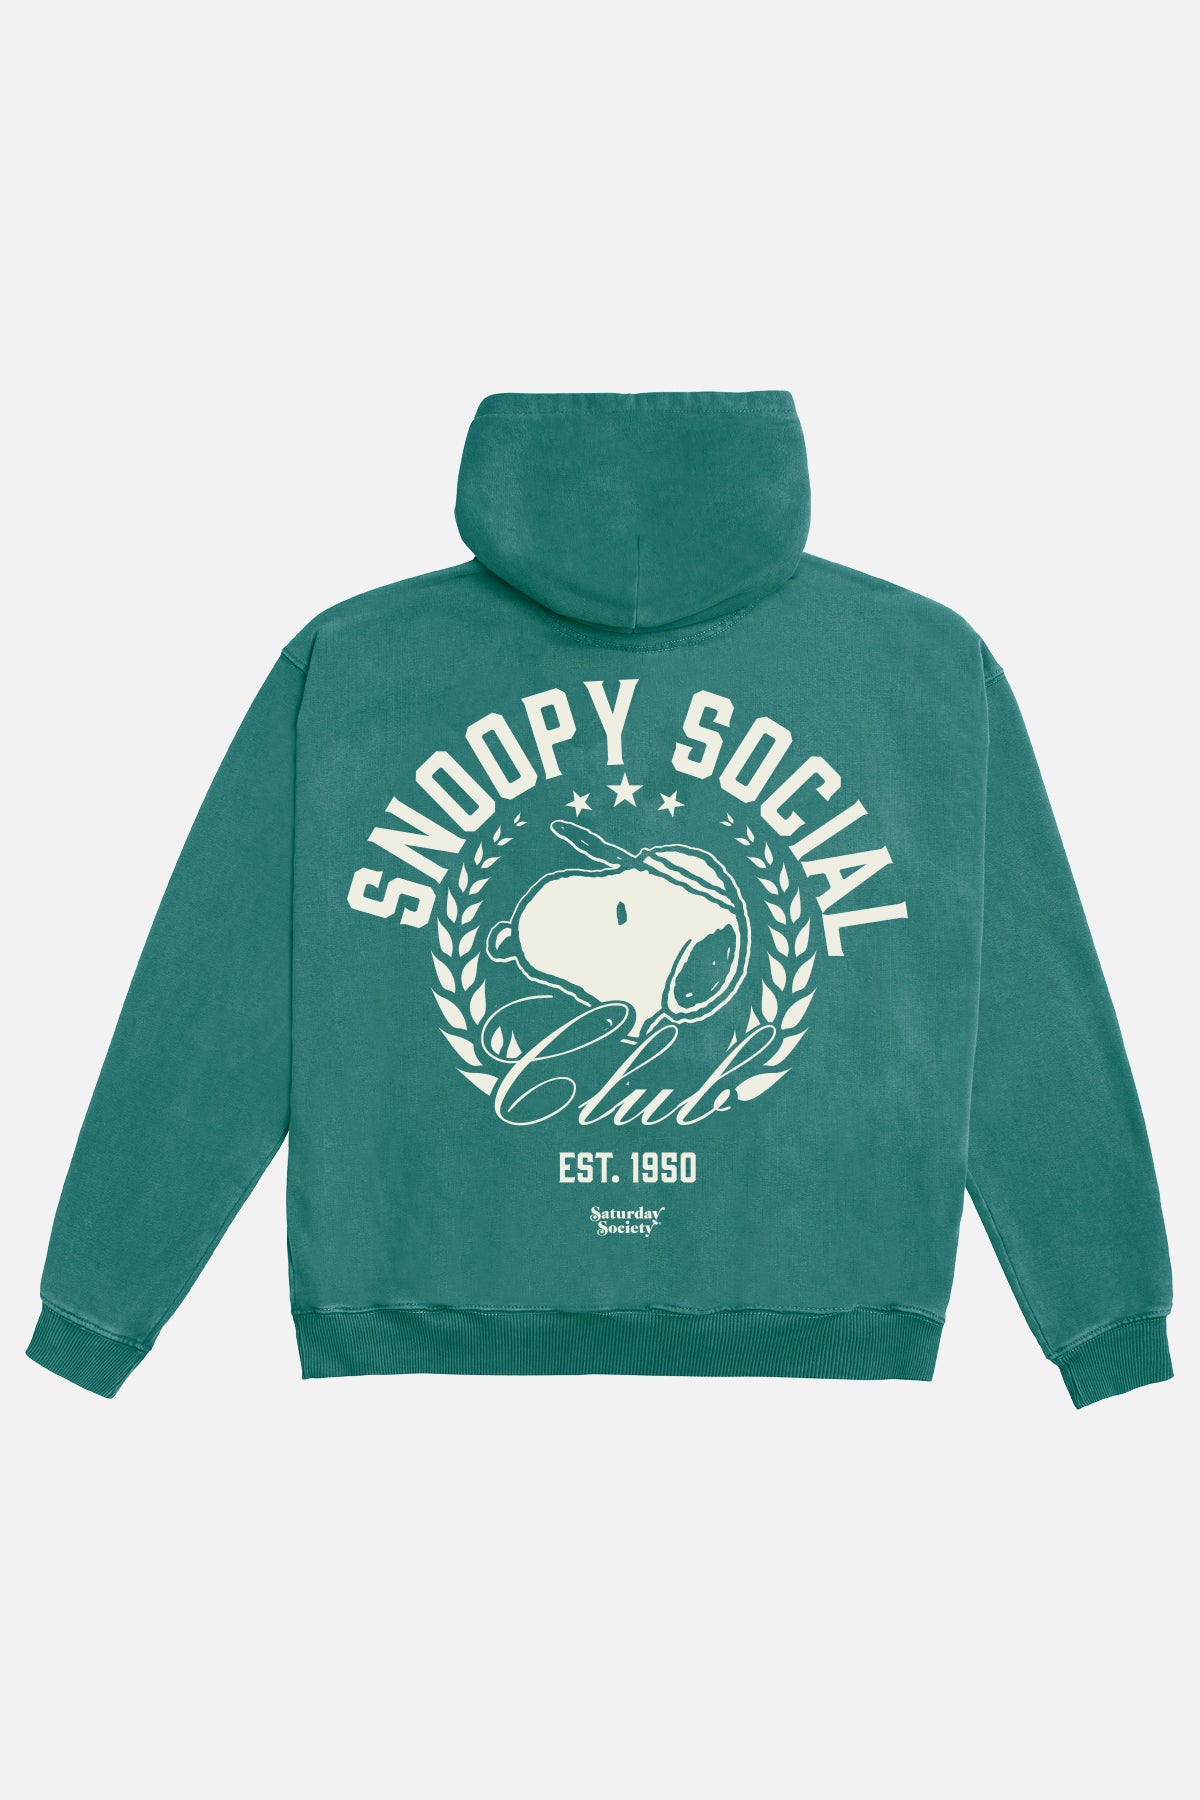 Snoopy Social Club Hoodie in Athletic Green